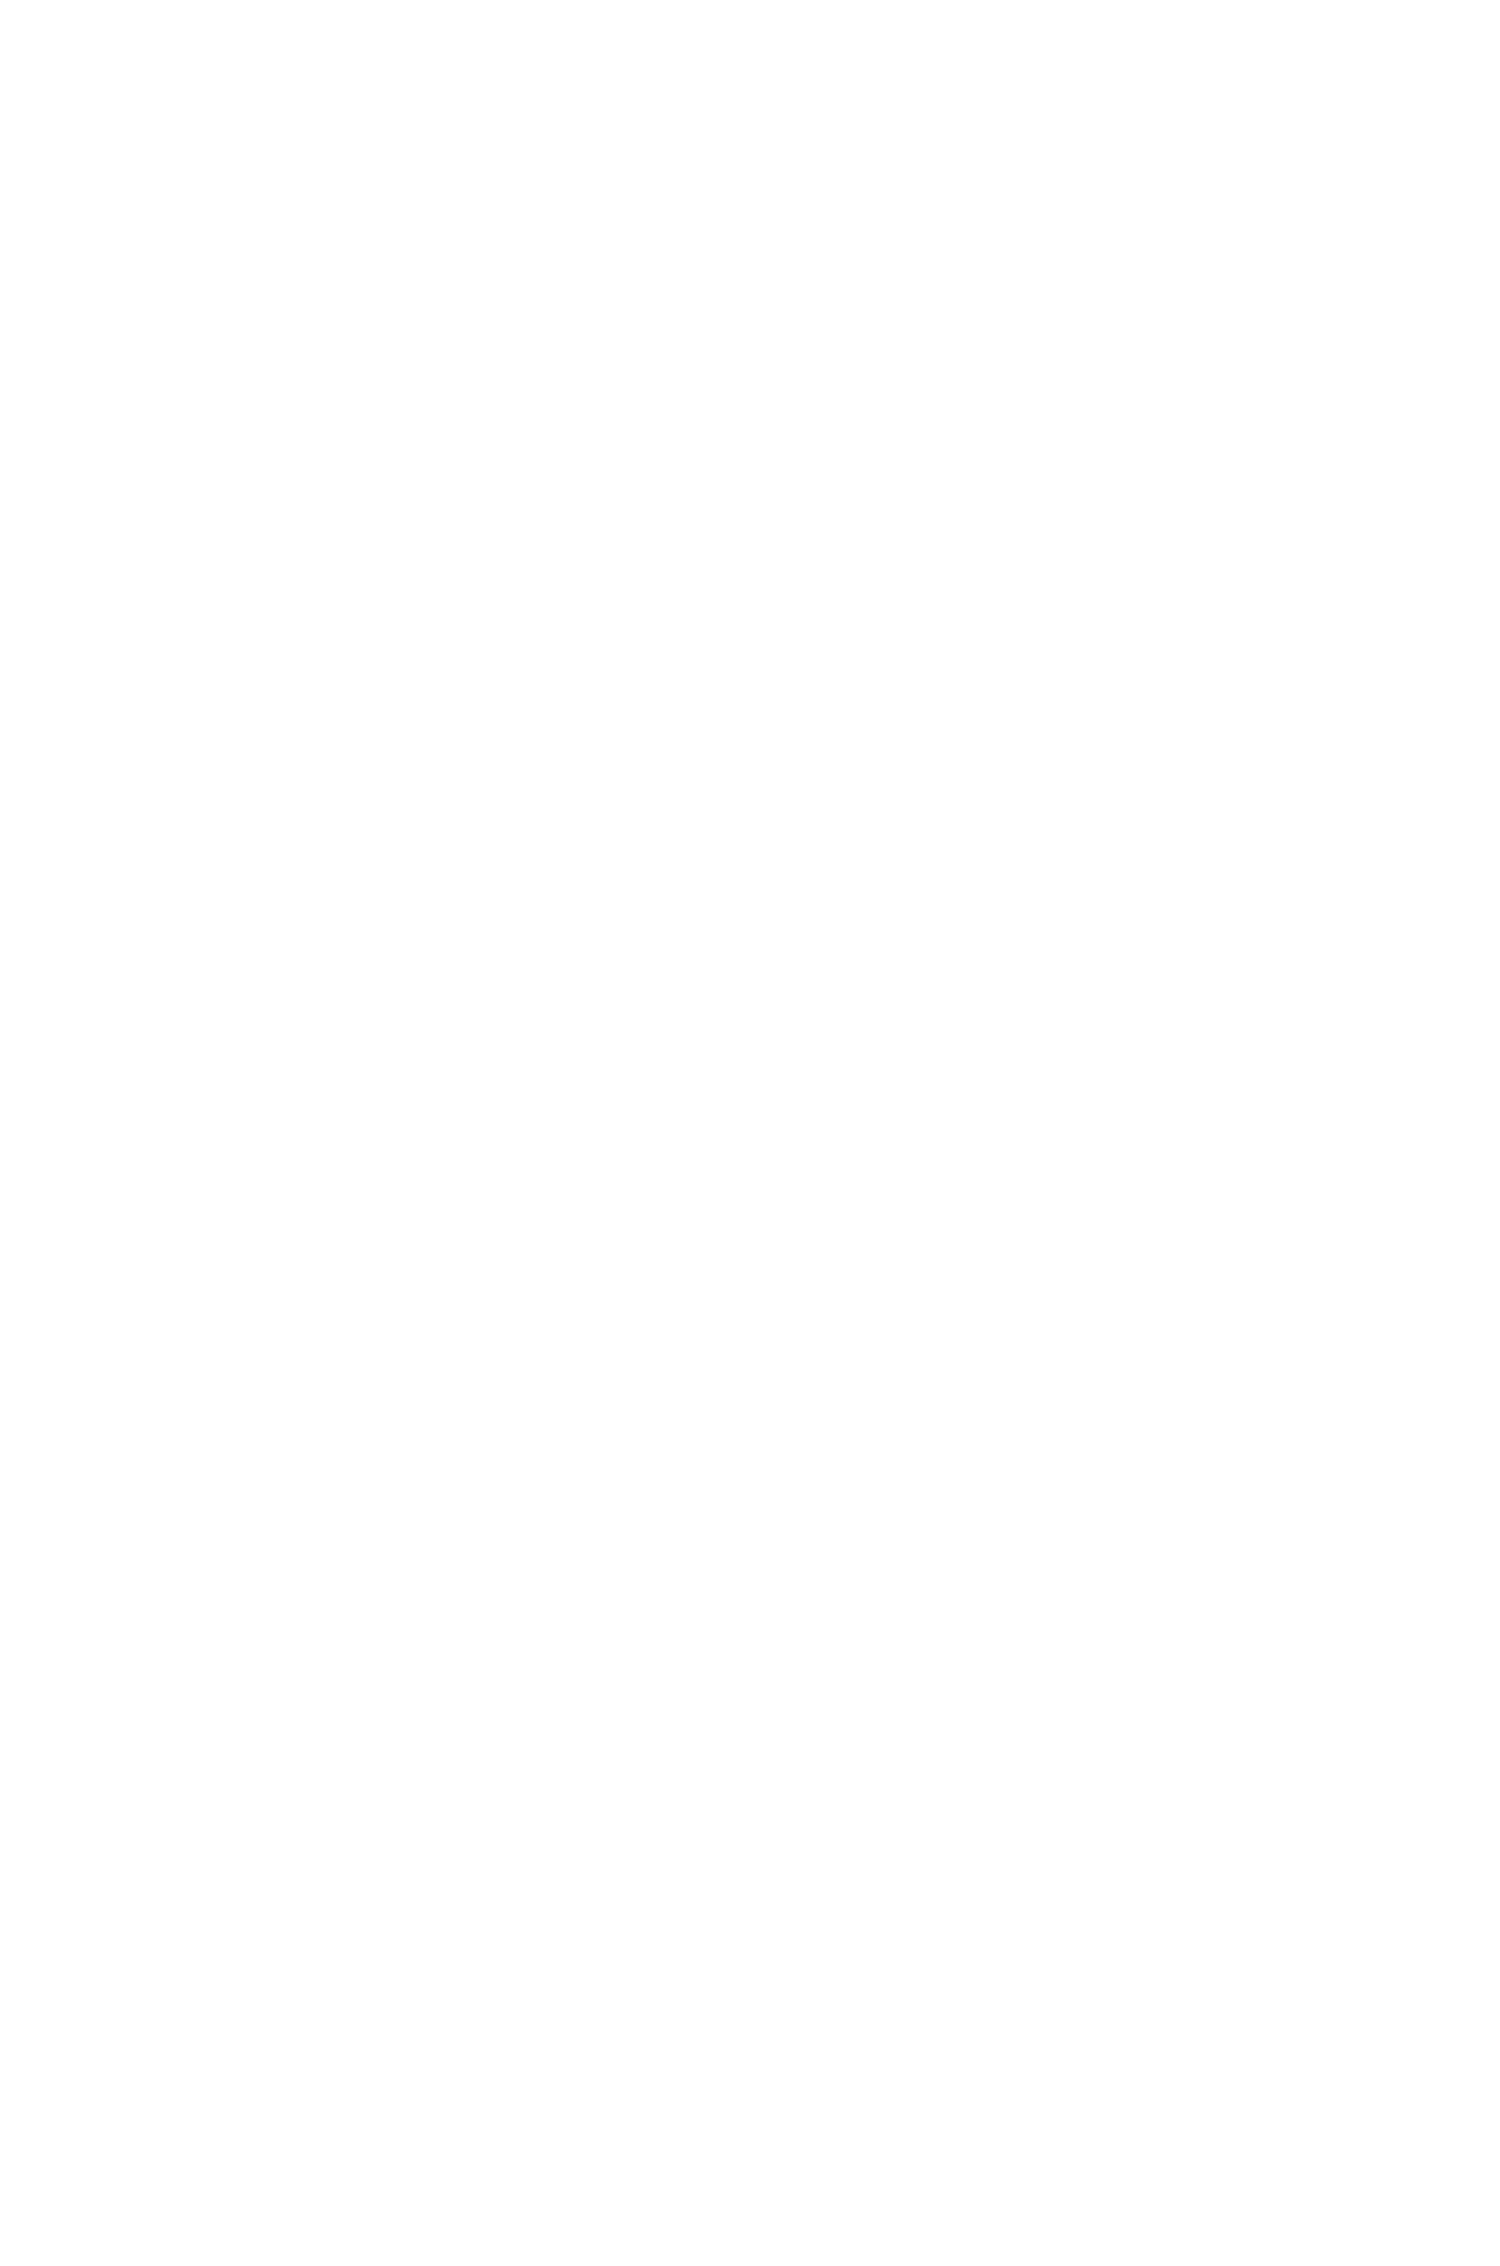 The Ben | Old City, Philadelphia